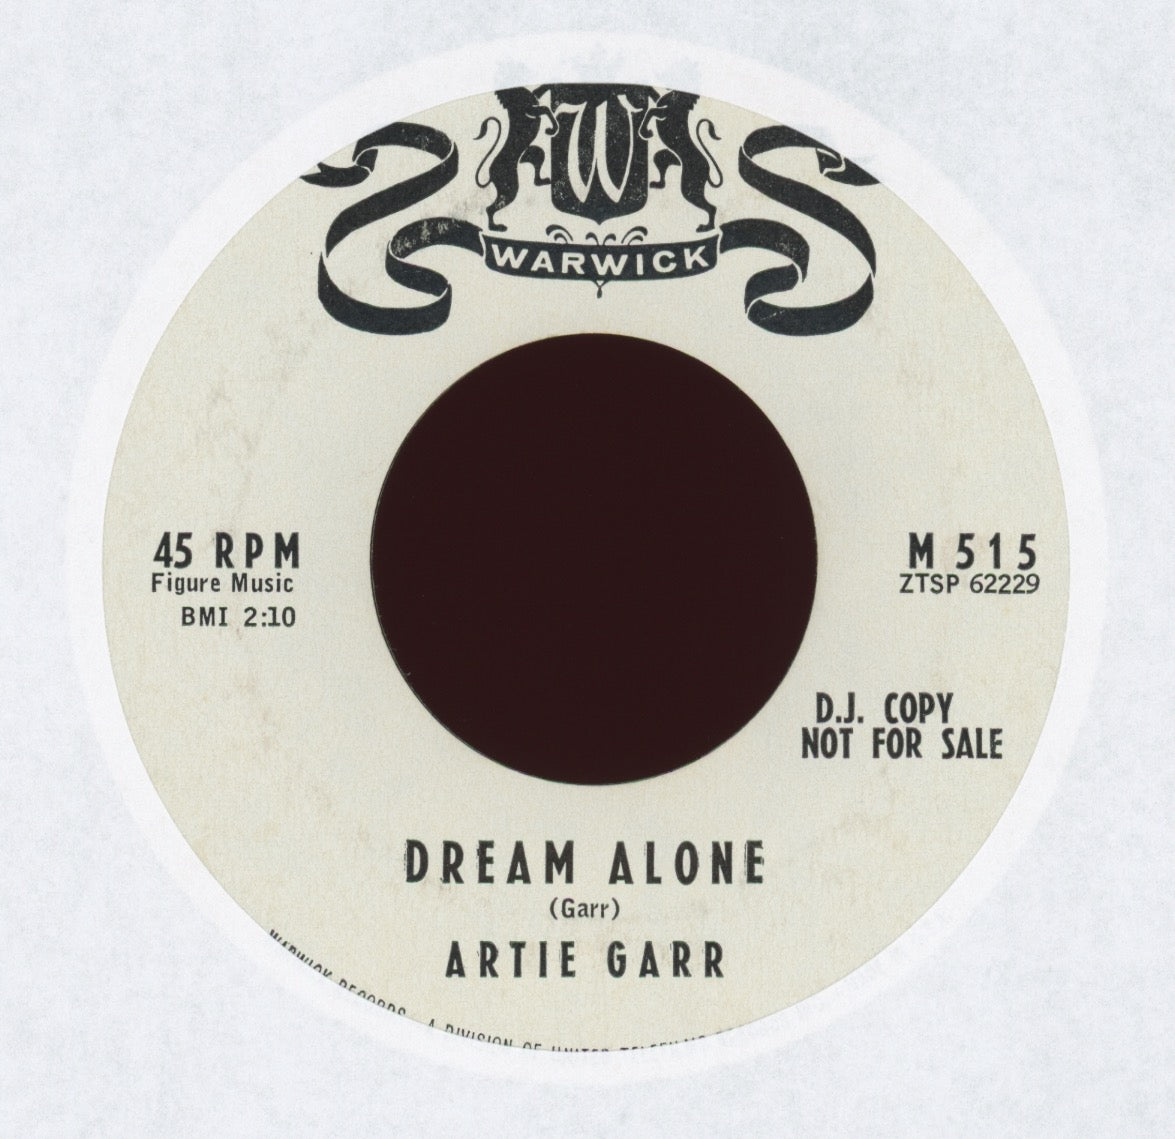 Artie Garr - Dream Alone on Warwick Promo Art Garfunkel